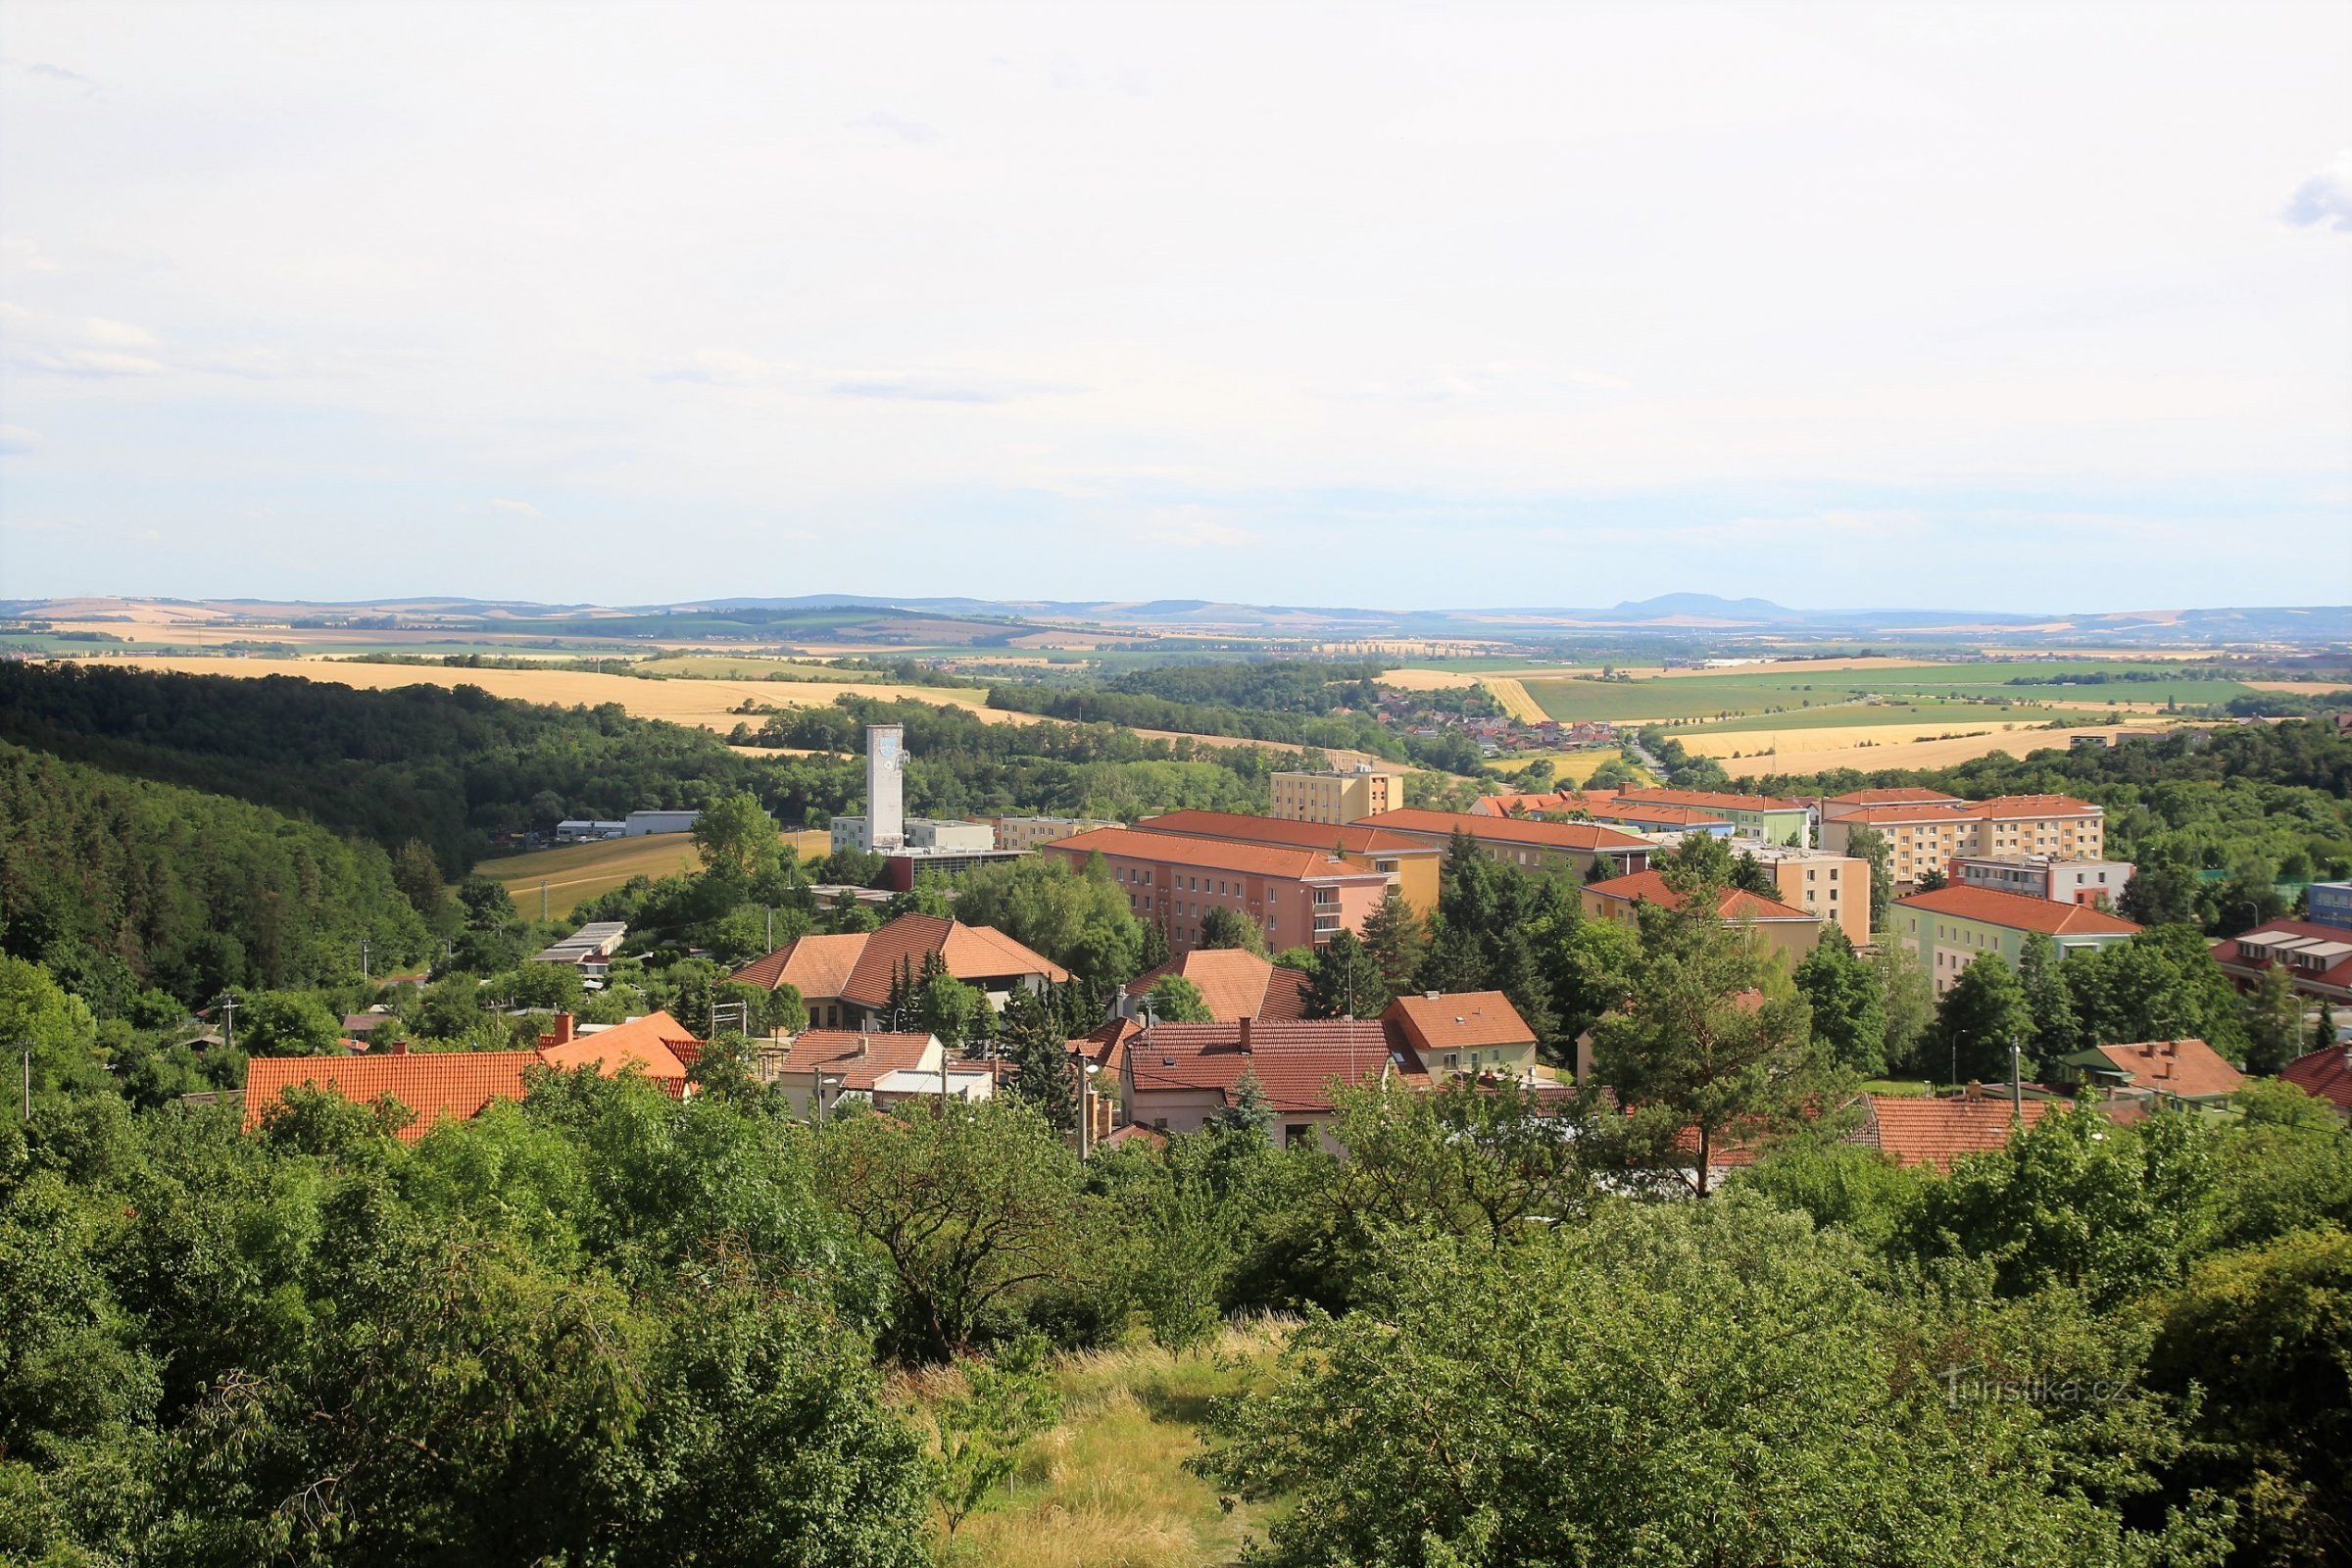 Mokrou 村と南モラヴィア平原の展望塔からの眺め